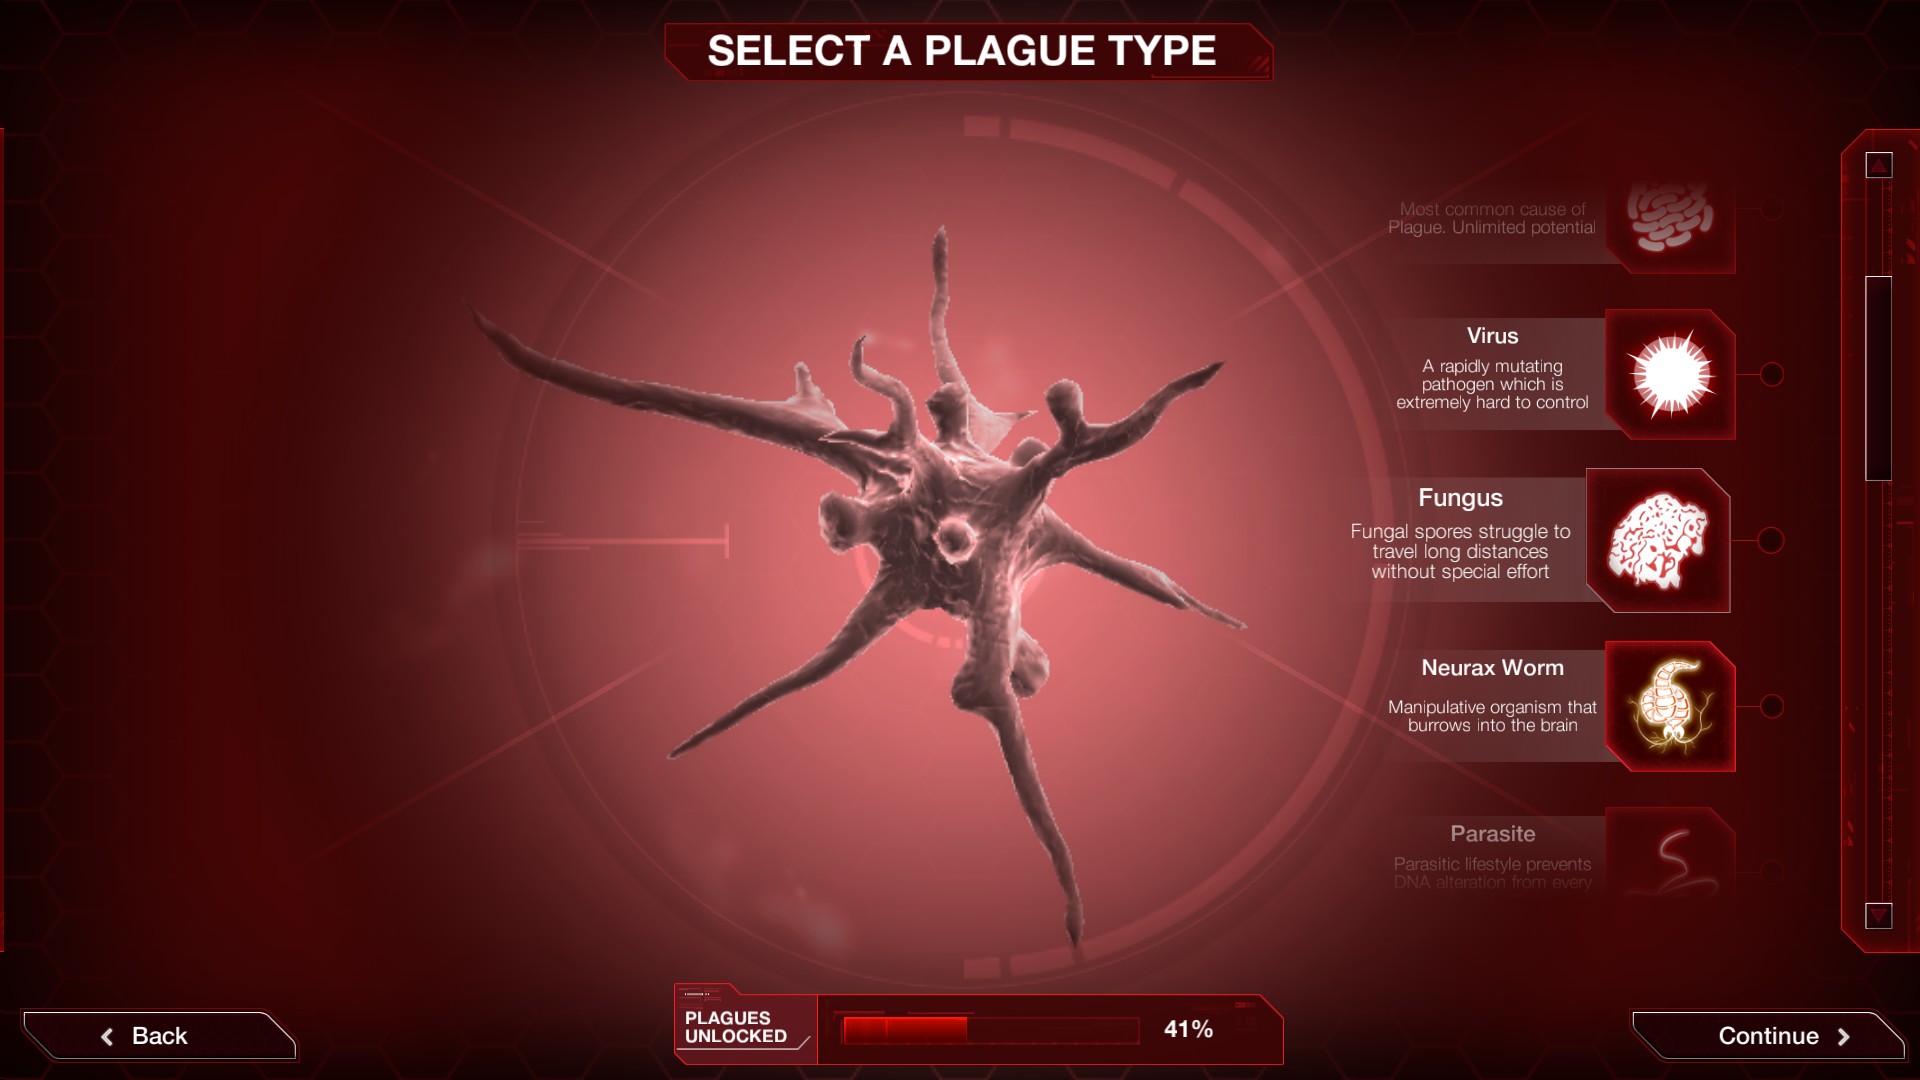 Los mejores juegos de estrategia móvil: la imagen de Plague Inc. muestra una selección de diferentes plagas, incluidas virales, fúngicos, wormes neurox y parásitos